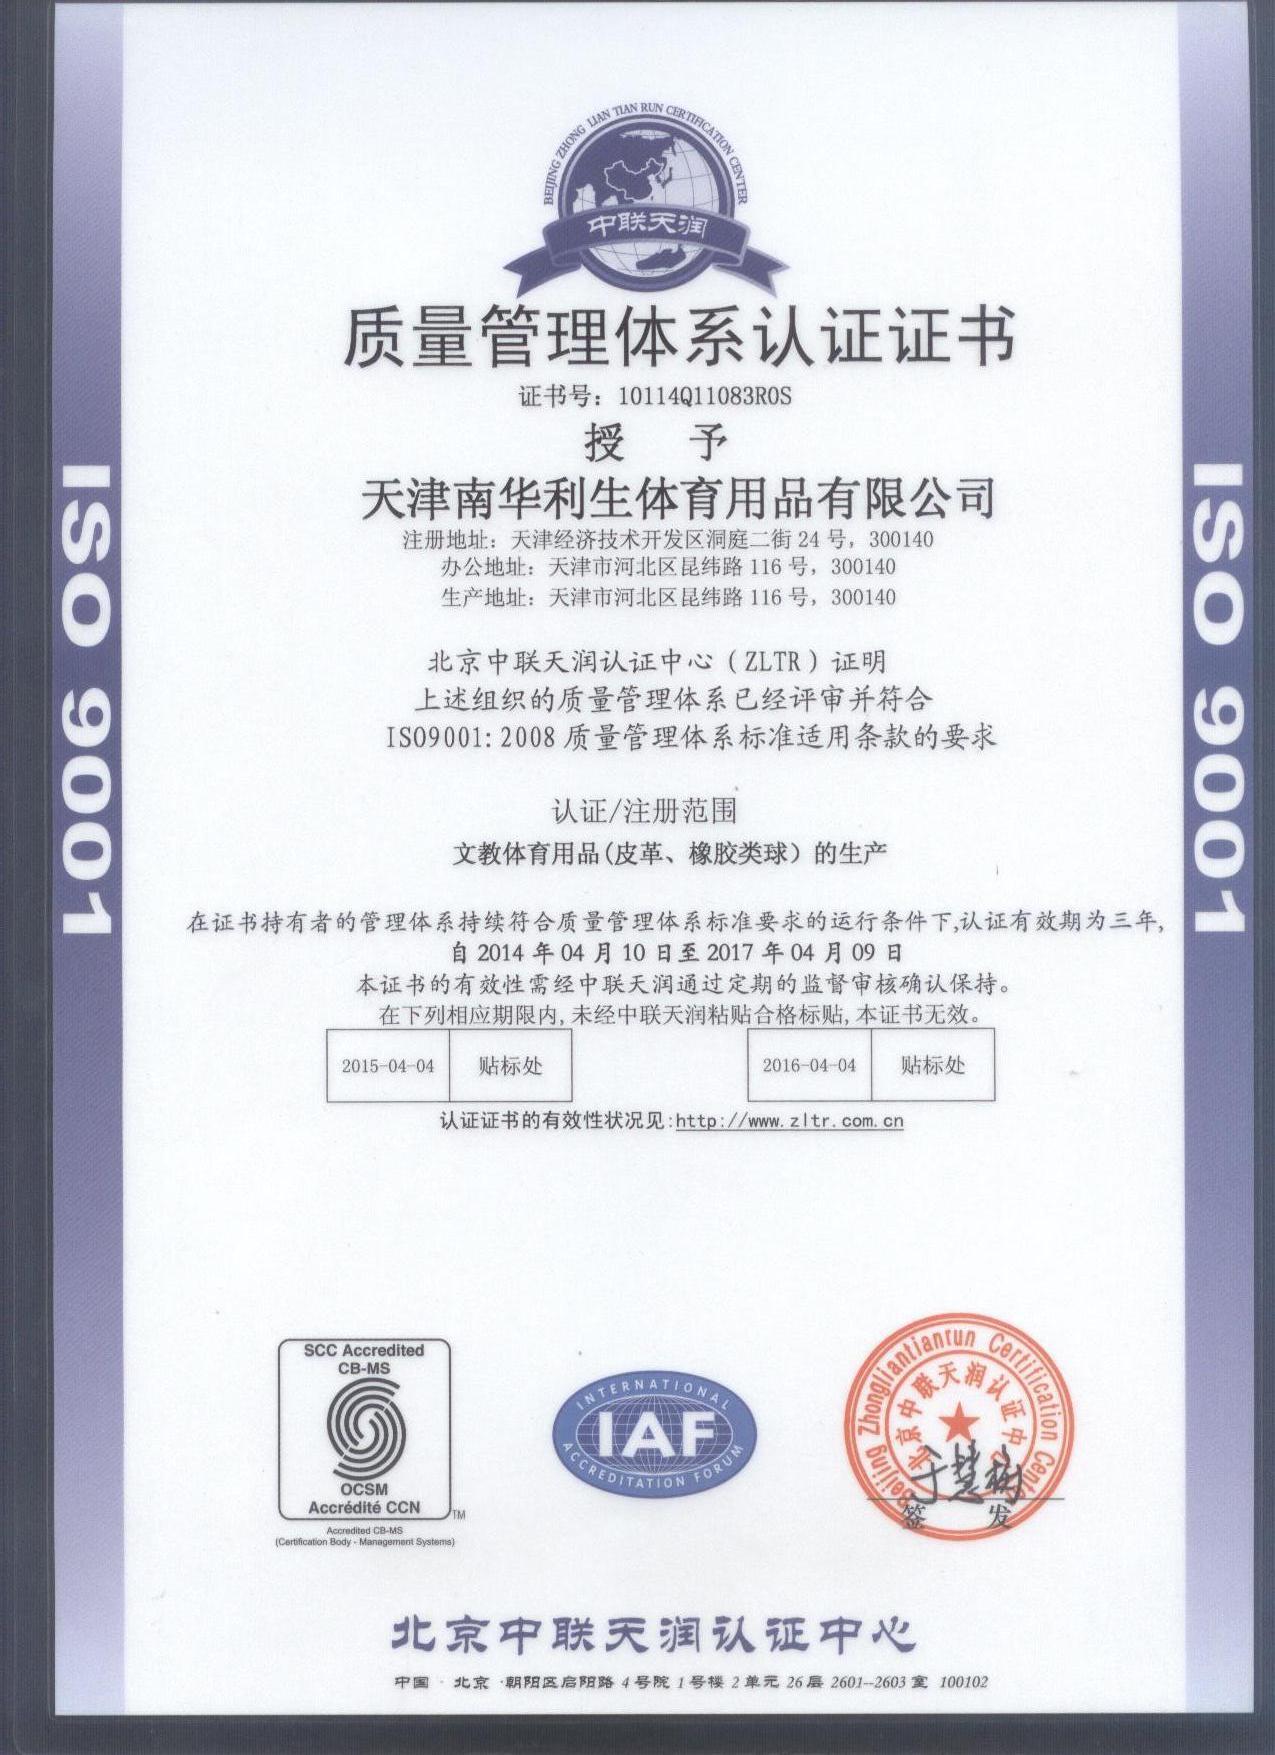 9001质量认证2014年 中文